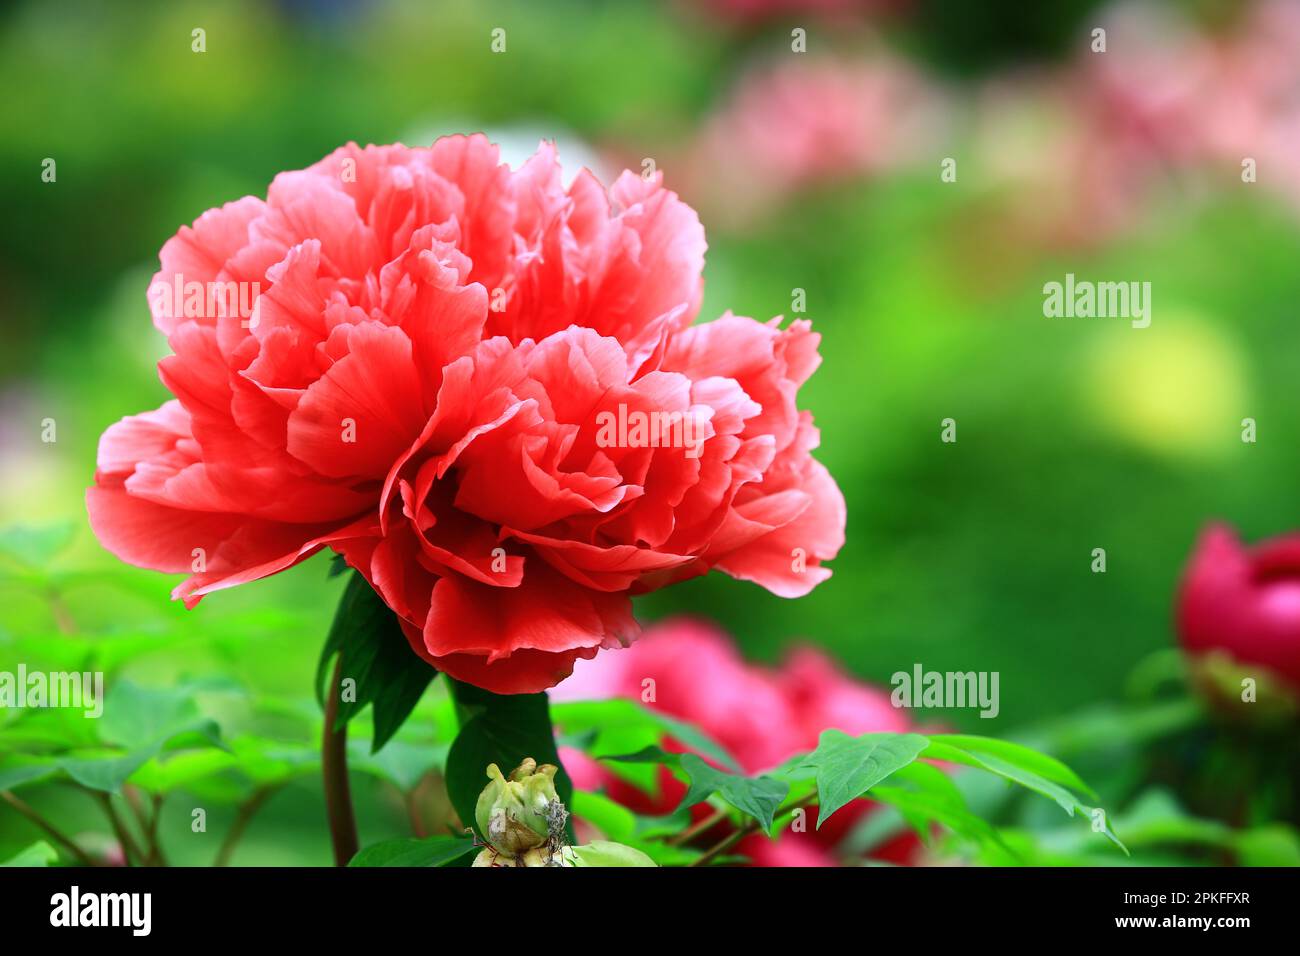 Fiore rosso di Peony, primo piano di fiore rosso di Peony che fiorisce nel giardino in primavera Foto Stock